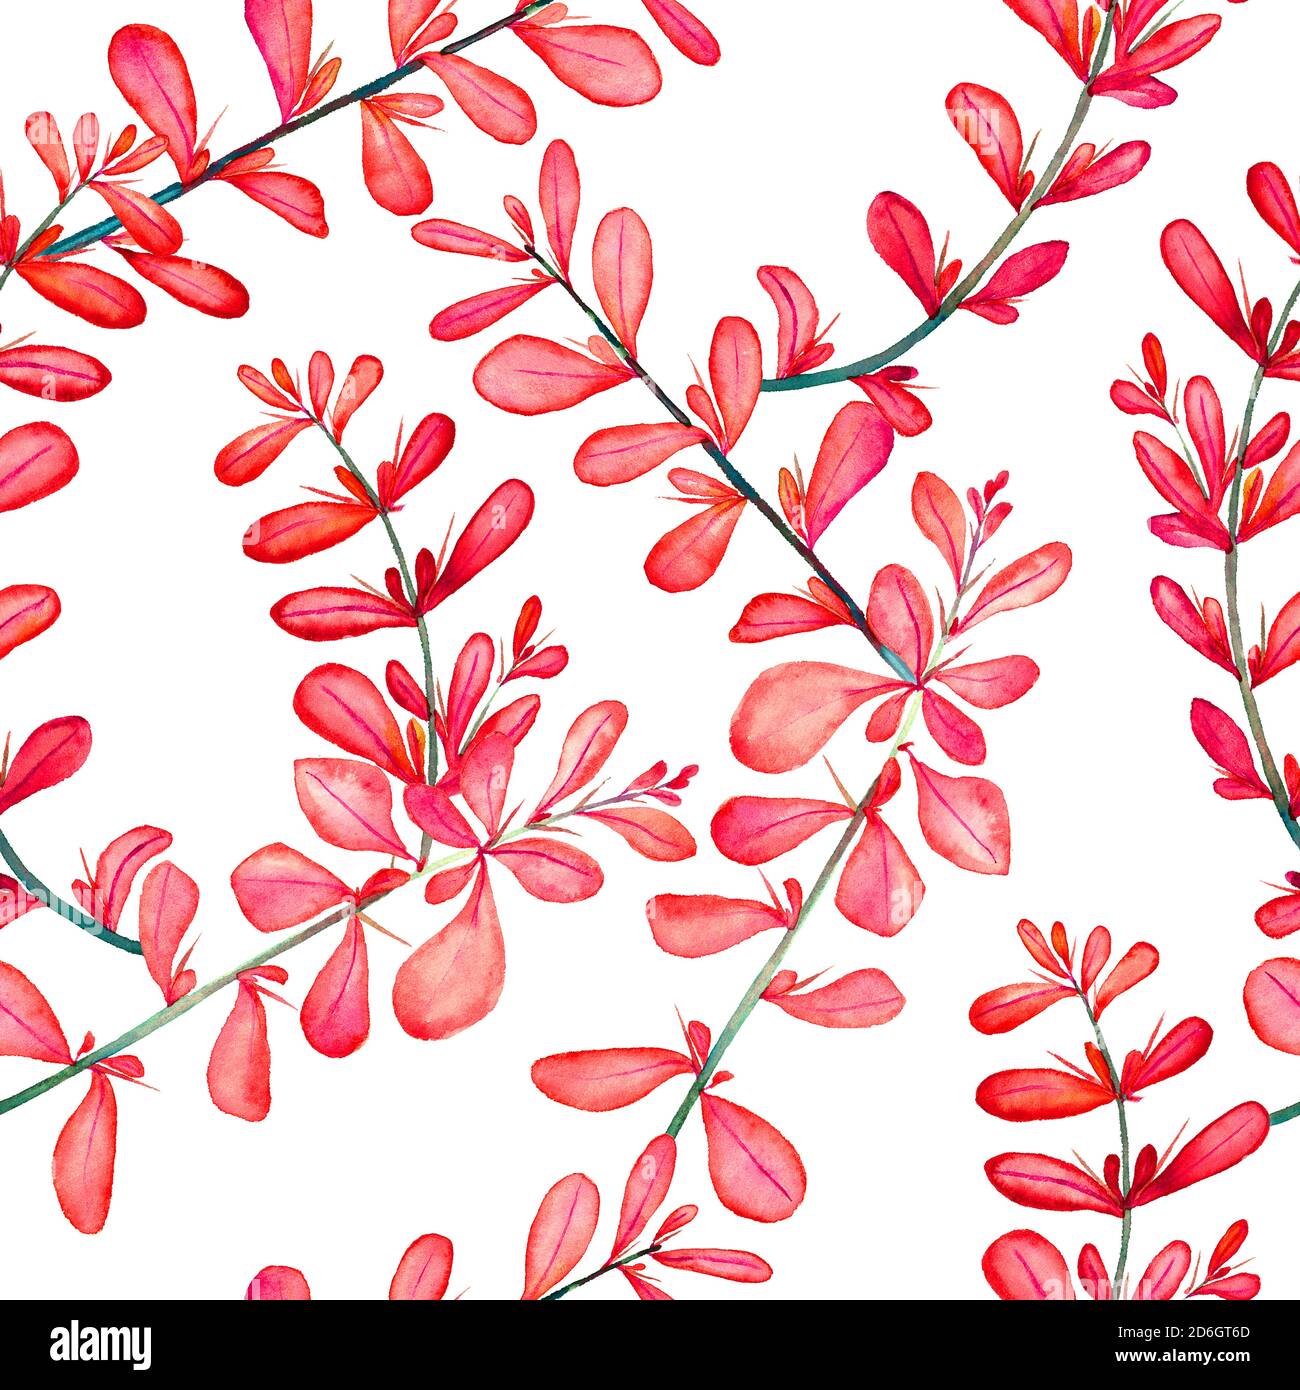 berberis vulgaris épineux (commune, européenne ou simplement barberry), branche avec feuilles rouges, illustration isolée peinte à la main aquarelle, motif sans couture Banque D'Images